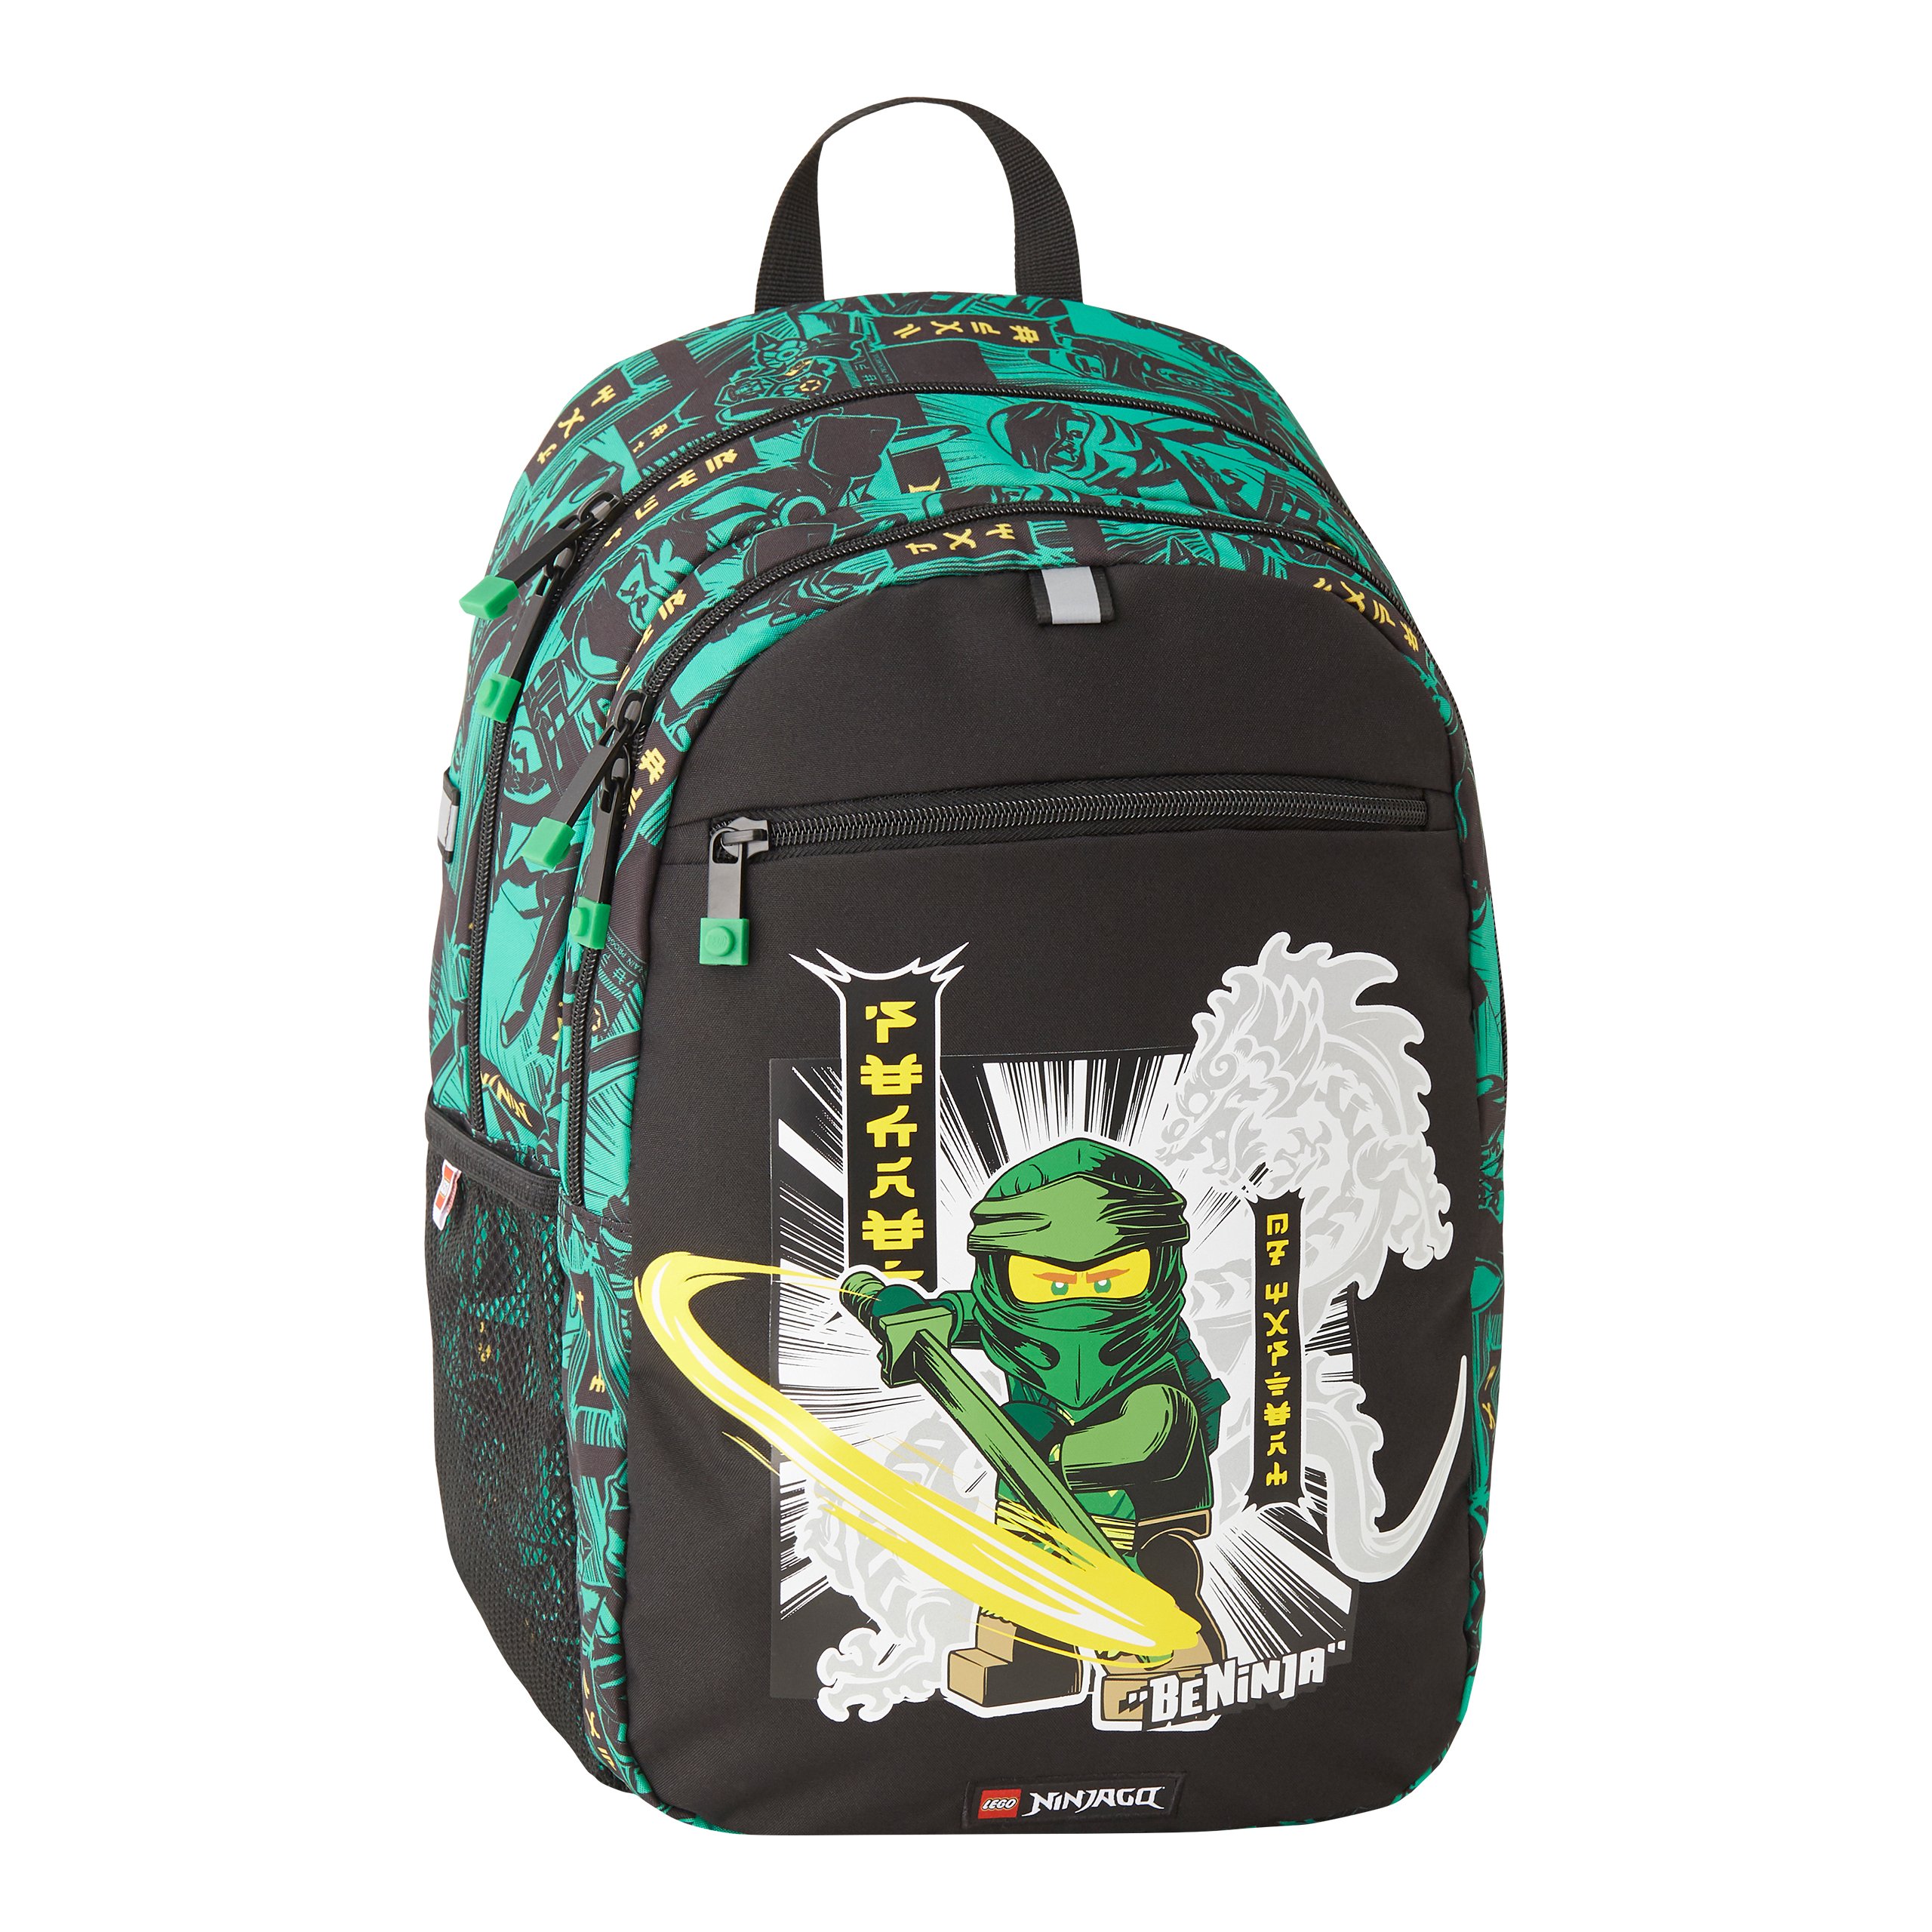 LEGO - Extended Backpack - Ninjago Green (20222-2301) - Leker